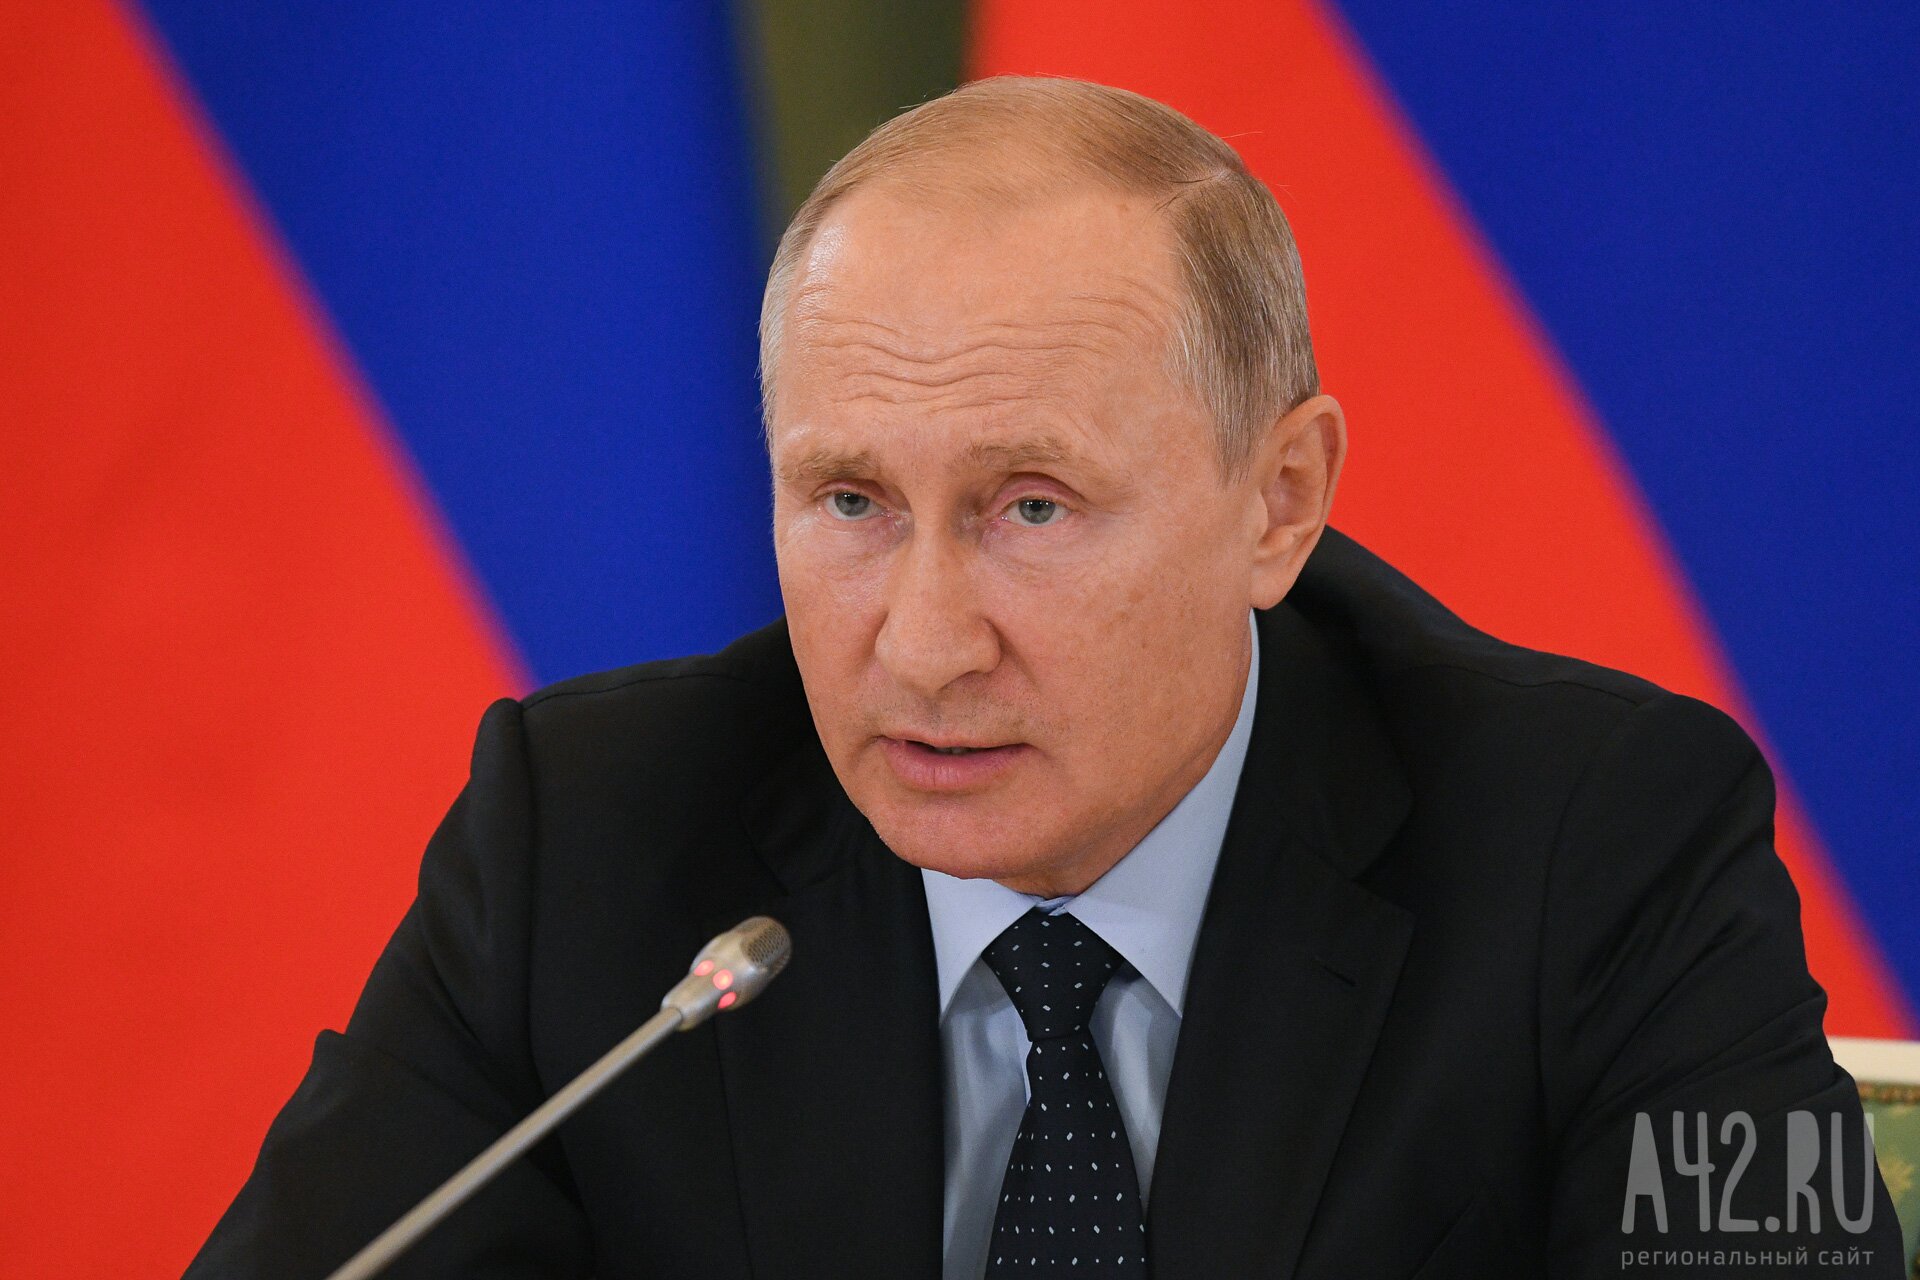 Путин призвал губернаторов контролировать соблюдение законодательства при проведении частичной мобилизации